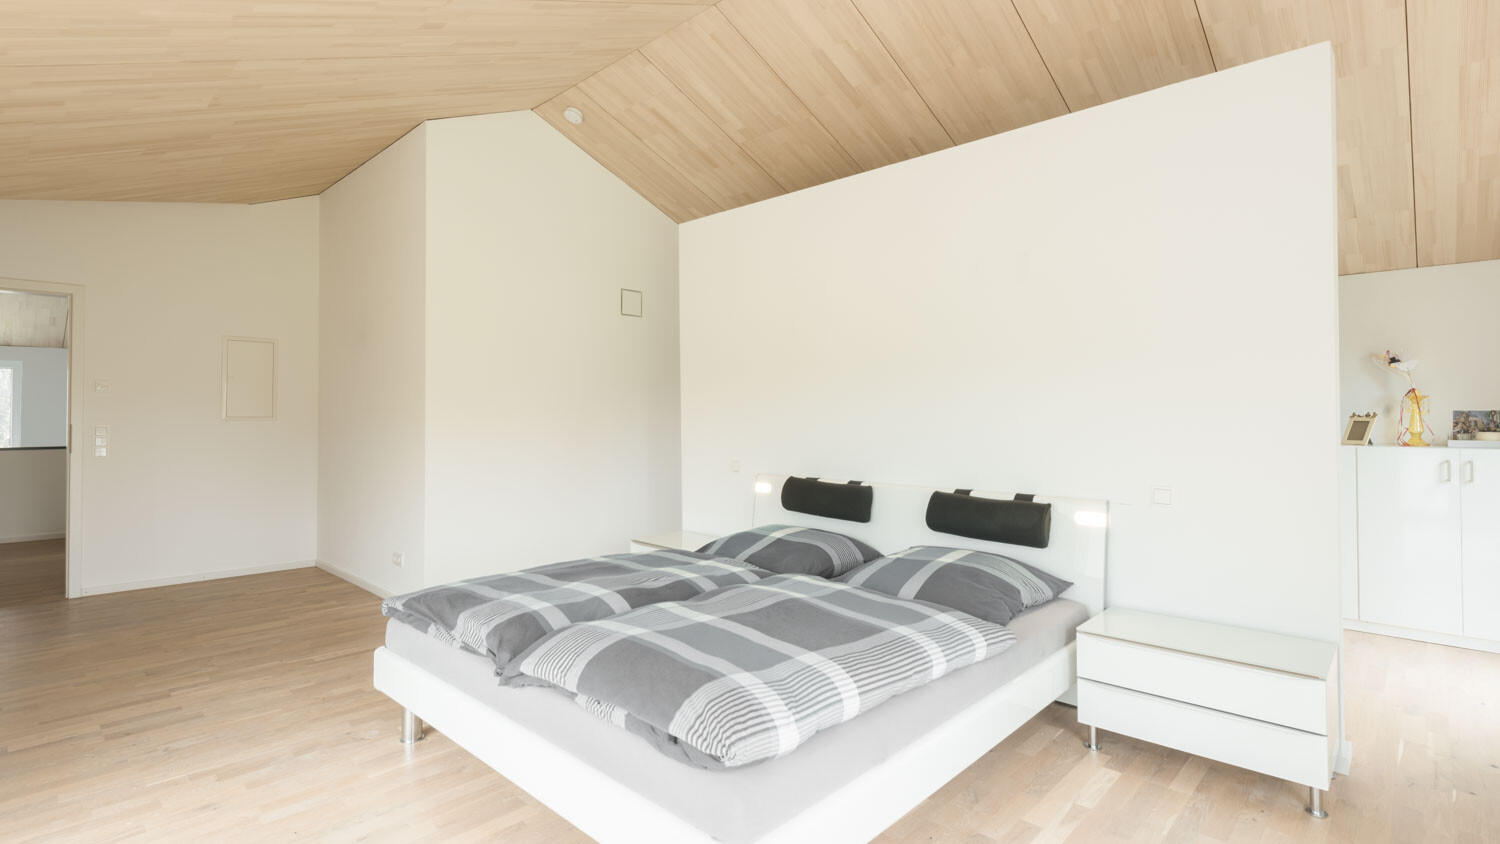 Die hellen Holzdecken-und Böden bilden zusammen mit den cremefarbenen Wänden ein harmonische Raumkonzept, welches einlädt zum Entspannen.  